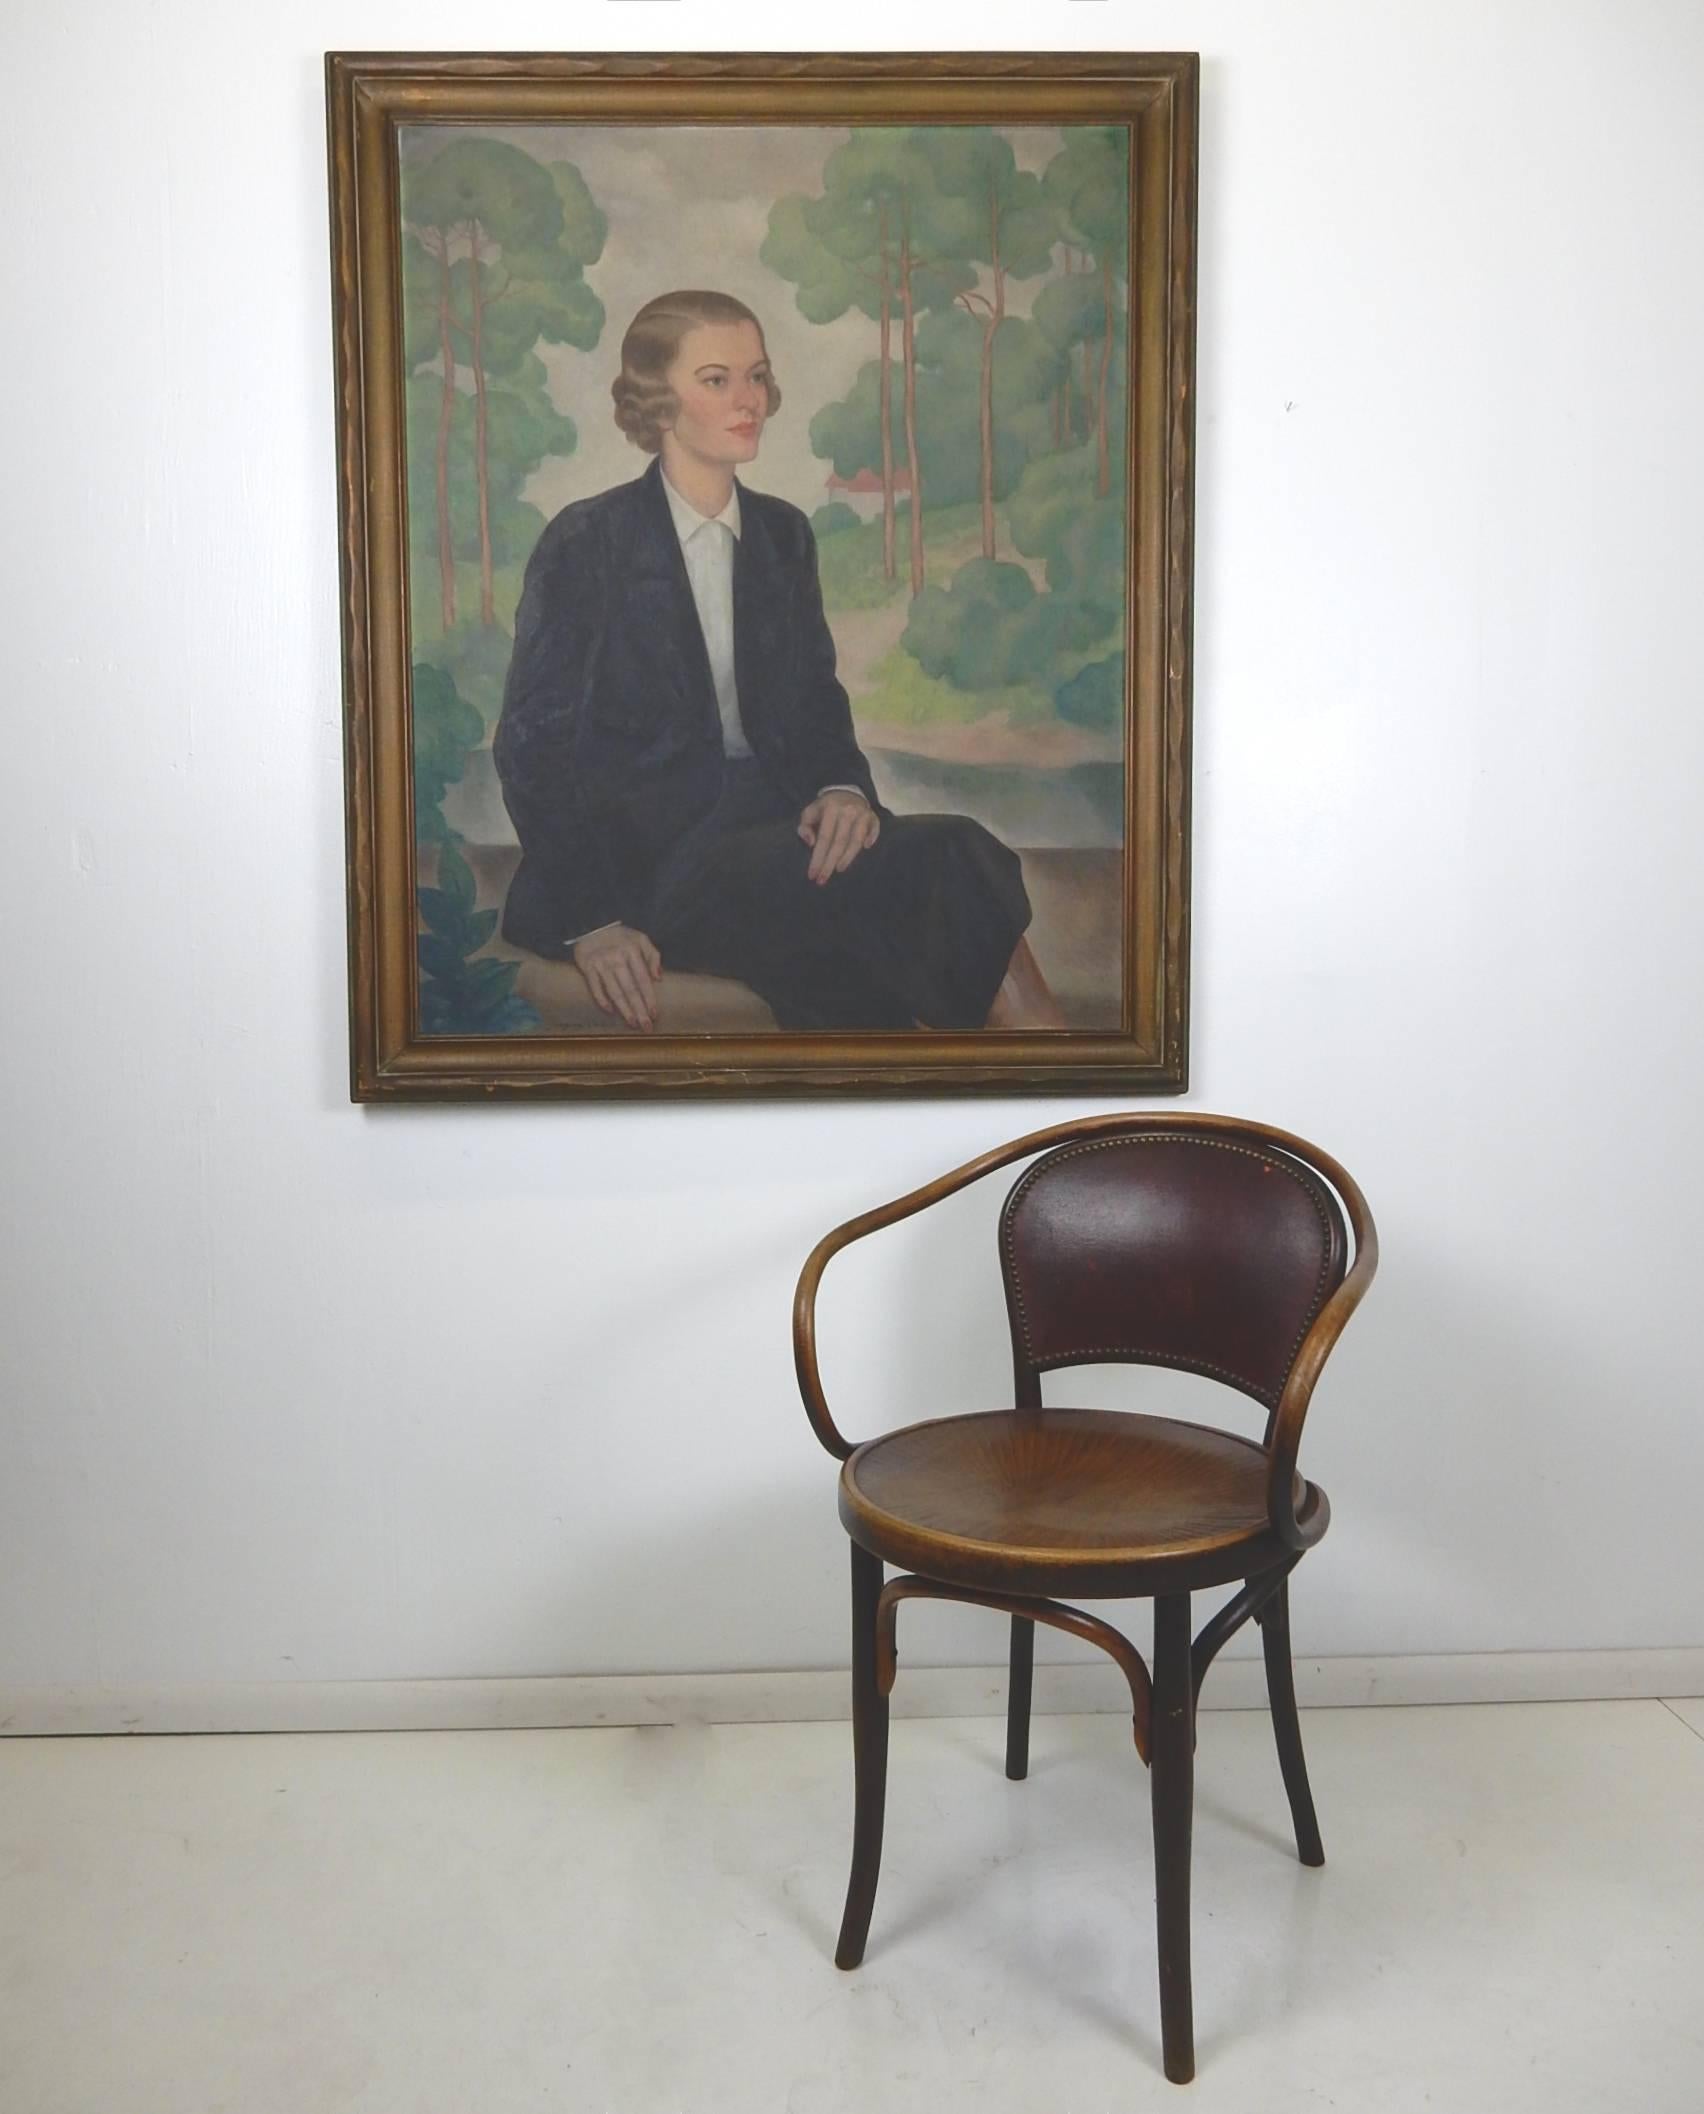 Cette grande huile sur toile des années 1930, réalisée par Gregory Orloff, représente une belle femme aristocrate dans un parc.
Signé dans le coin inférieur droit. Cadre original.

Orloff (1890-1981) s'est fait connaître à Chicago au milieu des